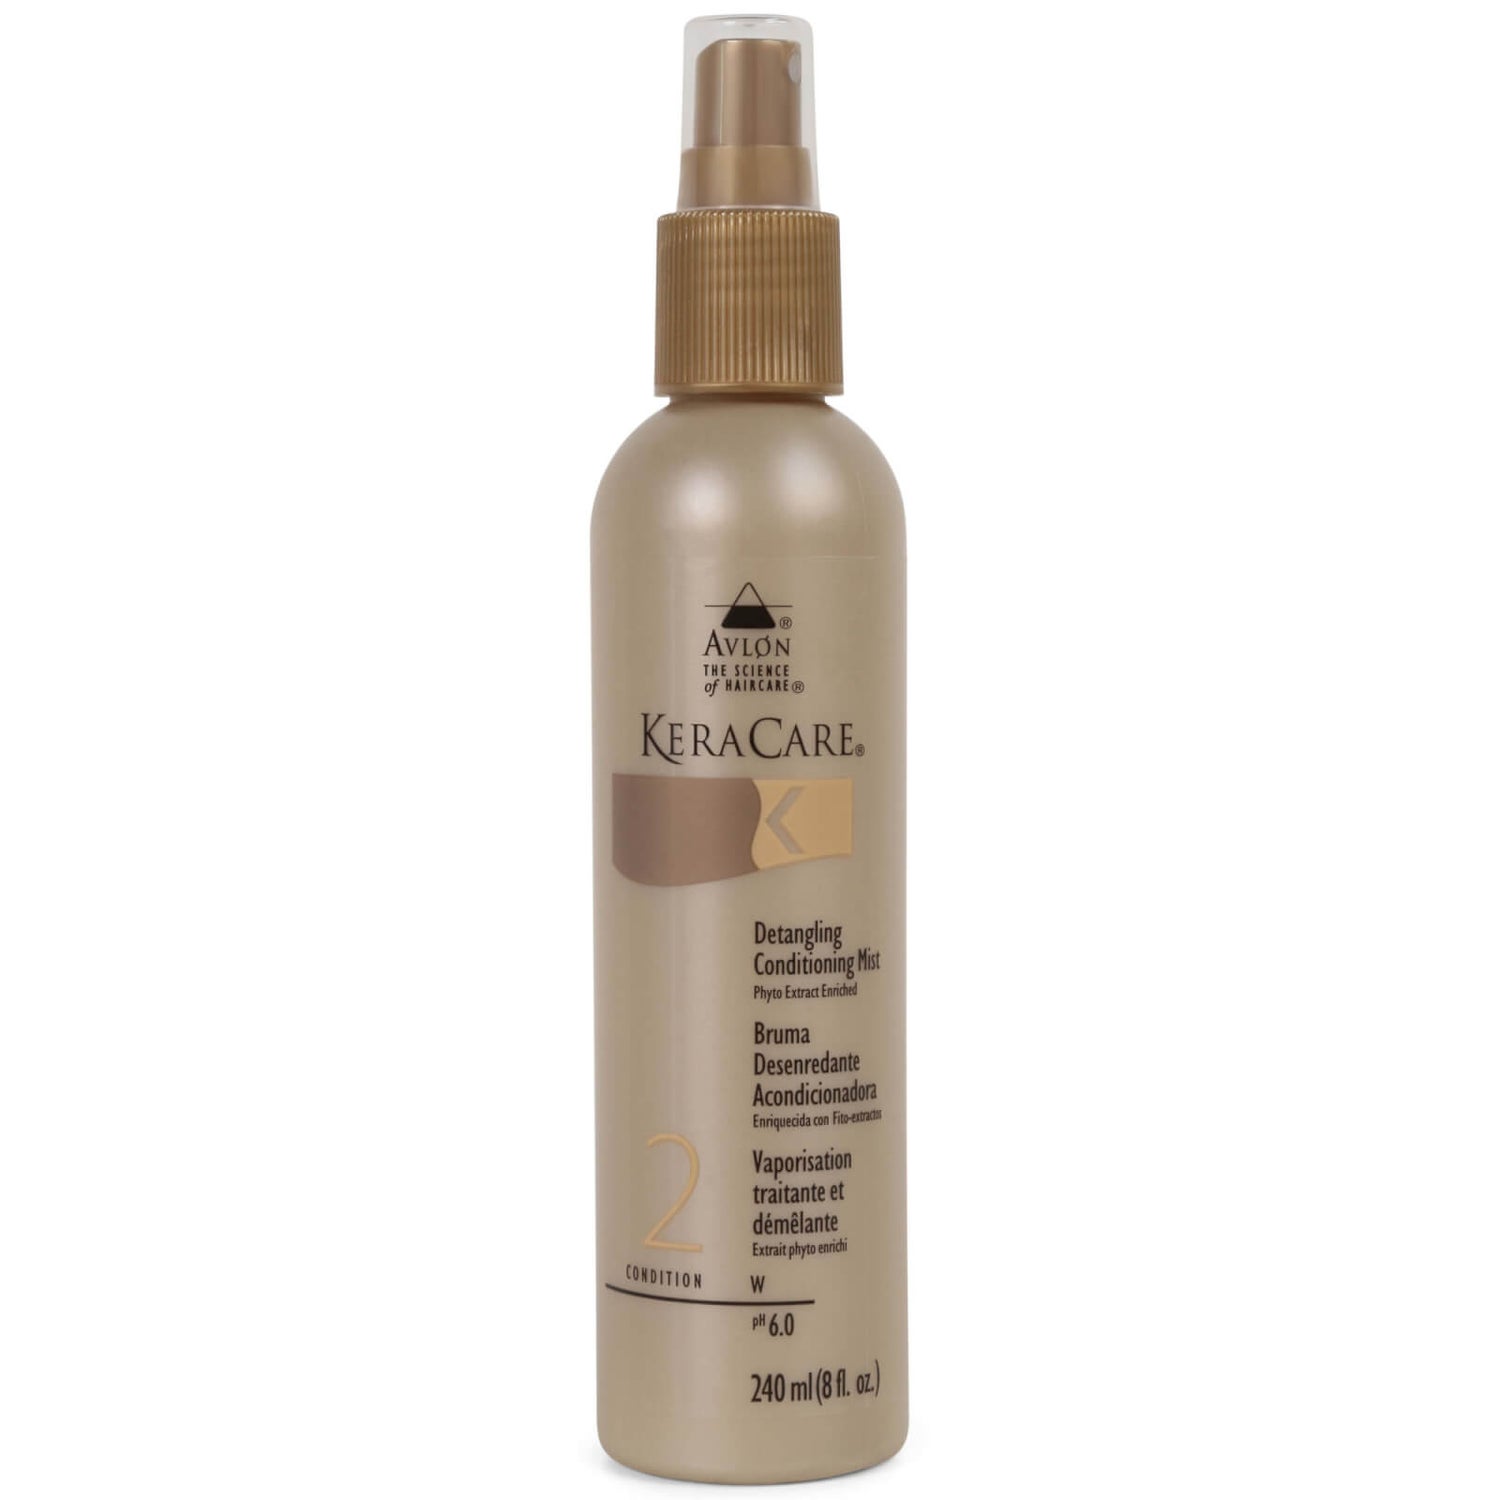 KeraCare Detangling odżywka do włosów w sprayu ułatwiająca rozczesywanie (240 ml)